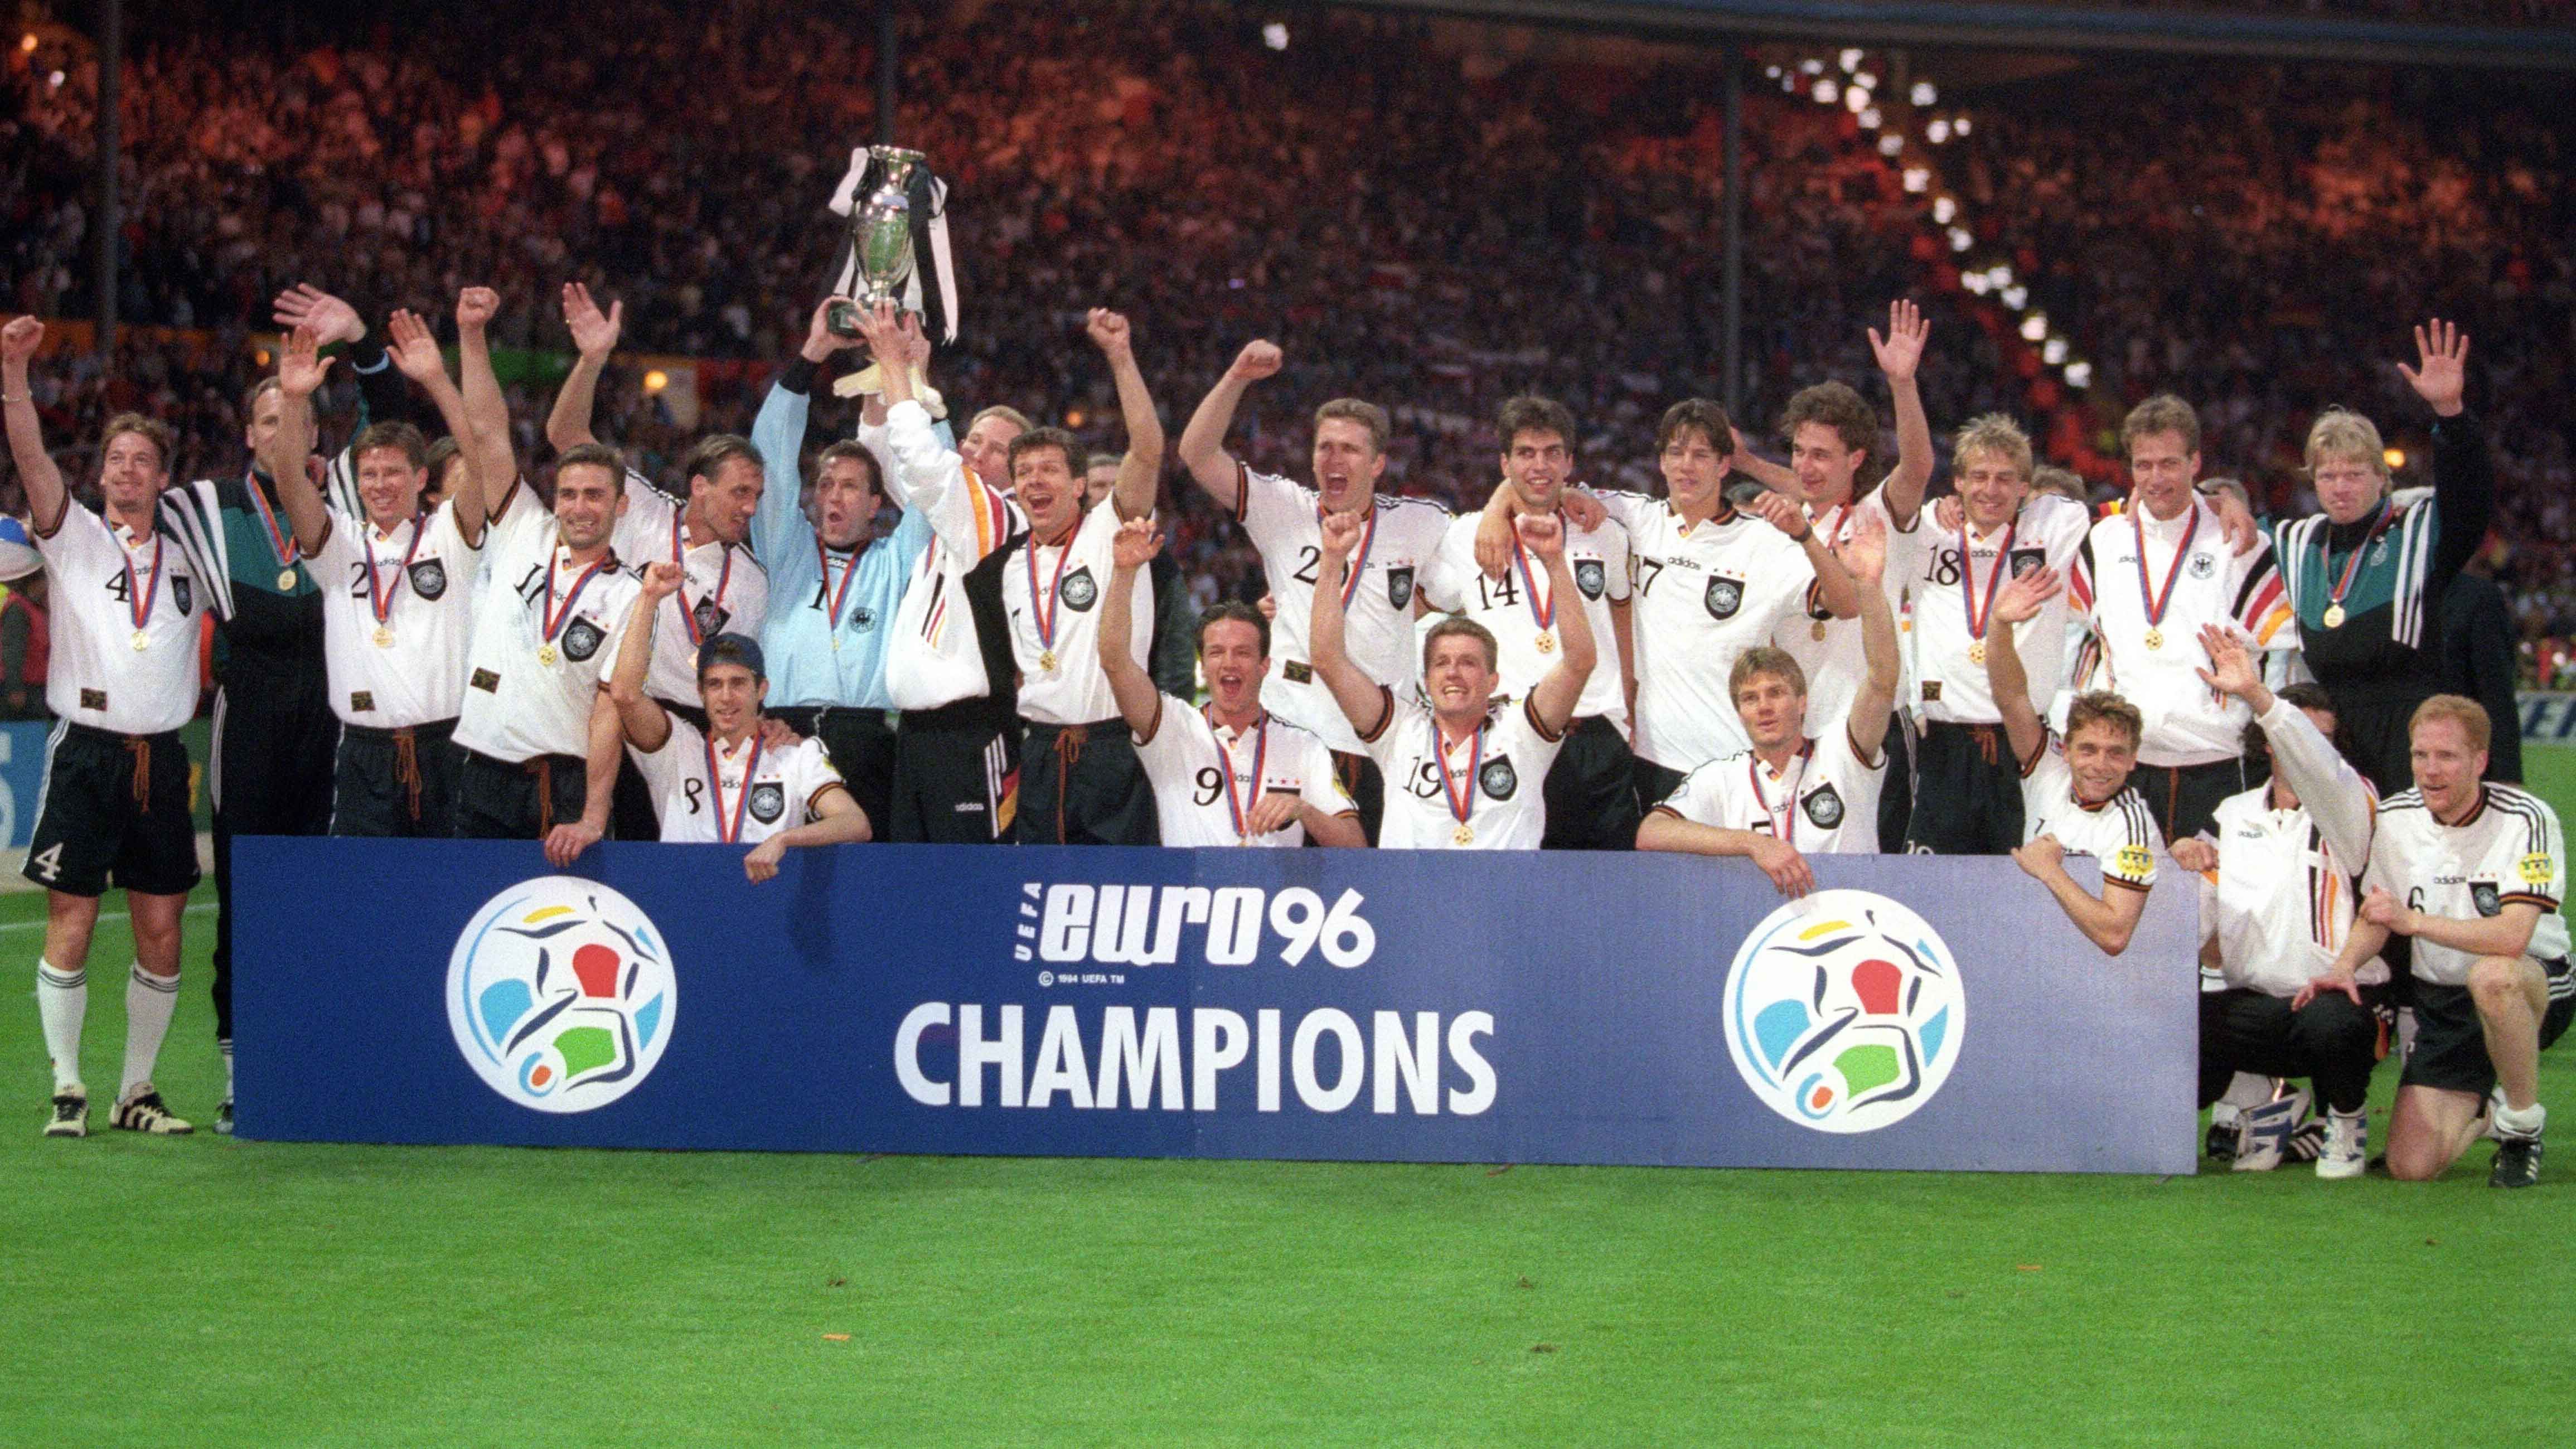 
                <strong>Letzter deutscher EM-Sieg 1996</strong><br>
                Beim letzten EM-Titel einer deutschen Mannschaft im Jahr 1996 besiegte Deutschland im altehrwürdigen Wembley-Stadion die Tschechische Mannschaft im Finale mit 2:1. Die Spieler bekamen für den Sieg damals lediglich eine Prämie von 52.000 Mark (umgerechnet rund 26.000 Euro).
              